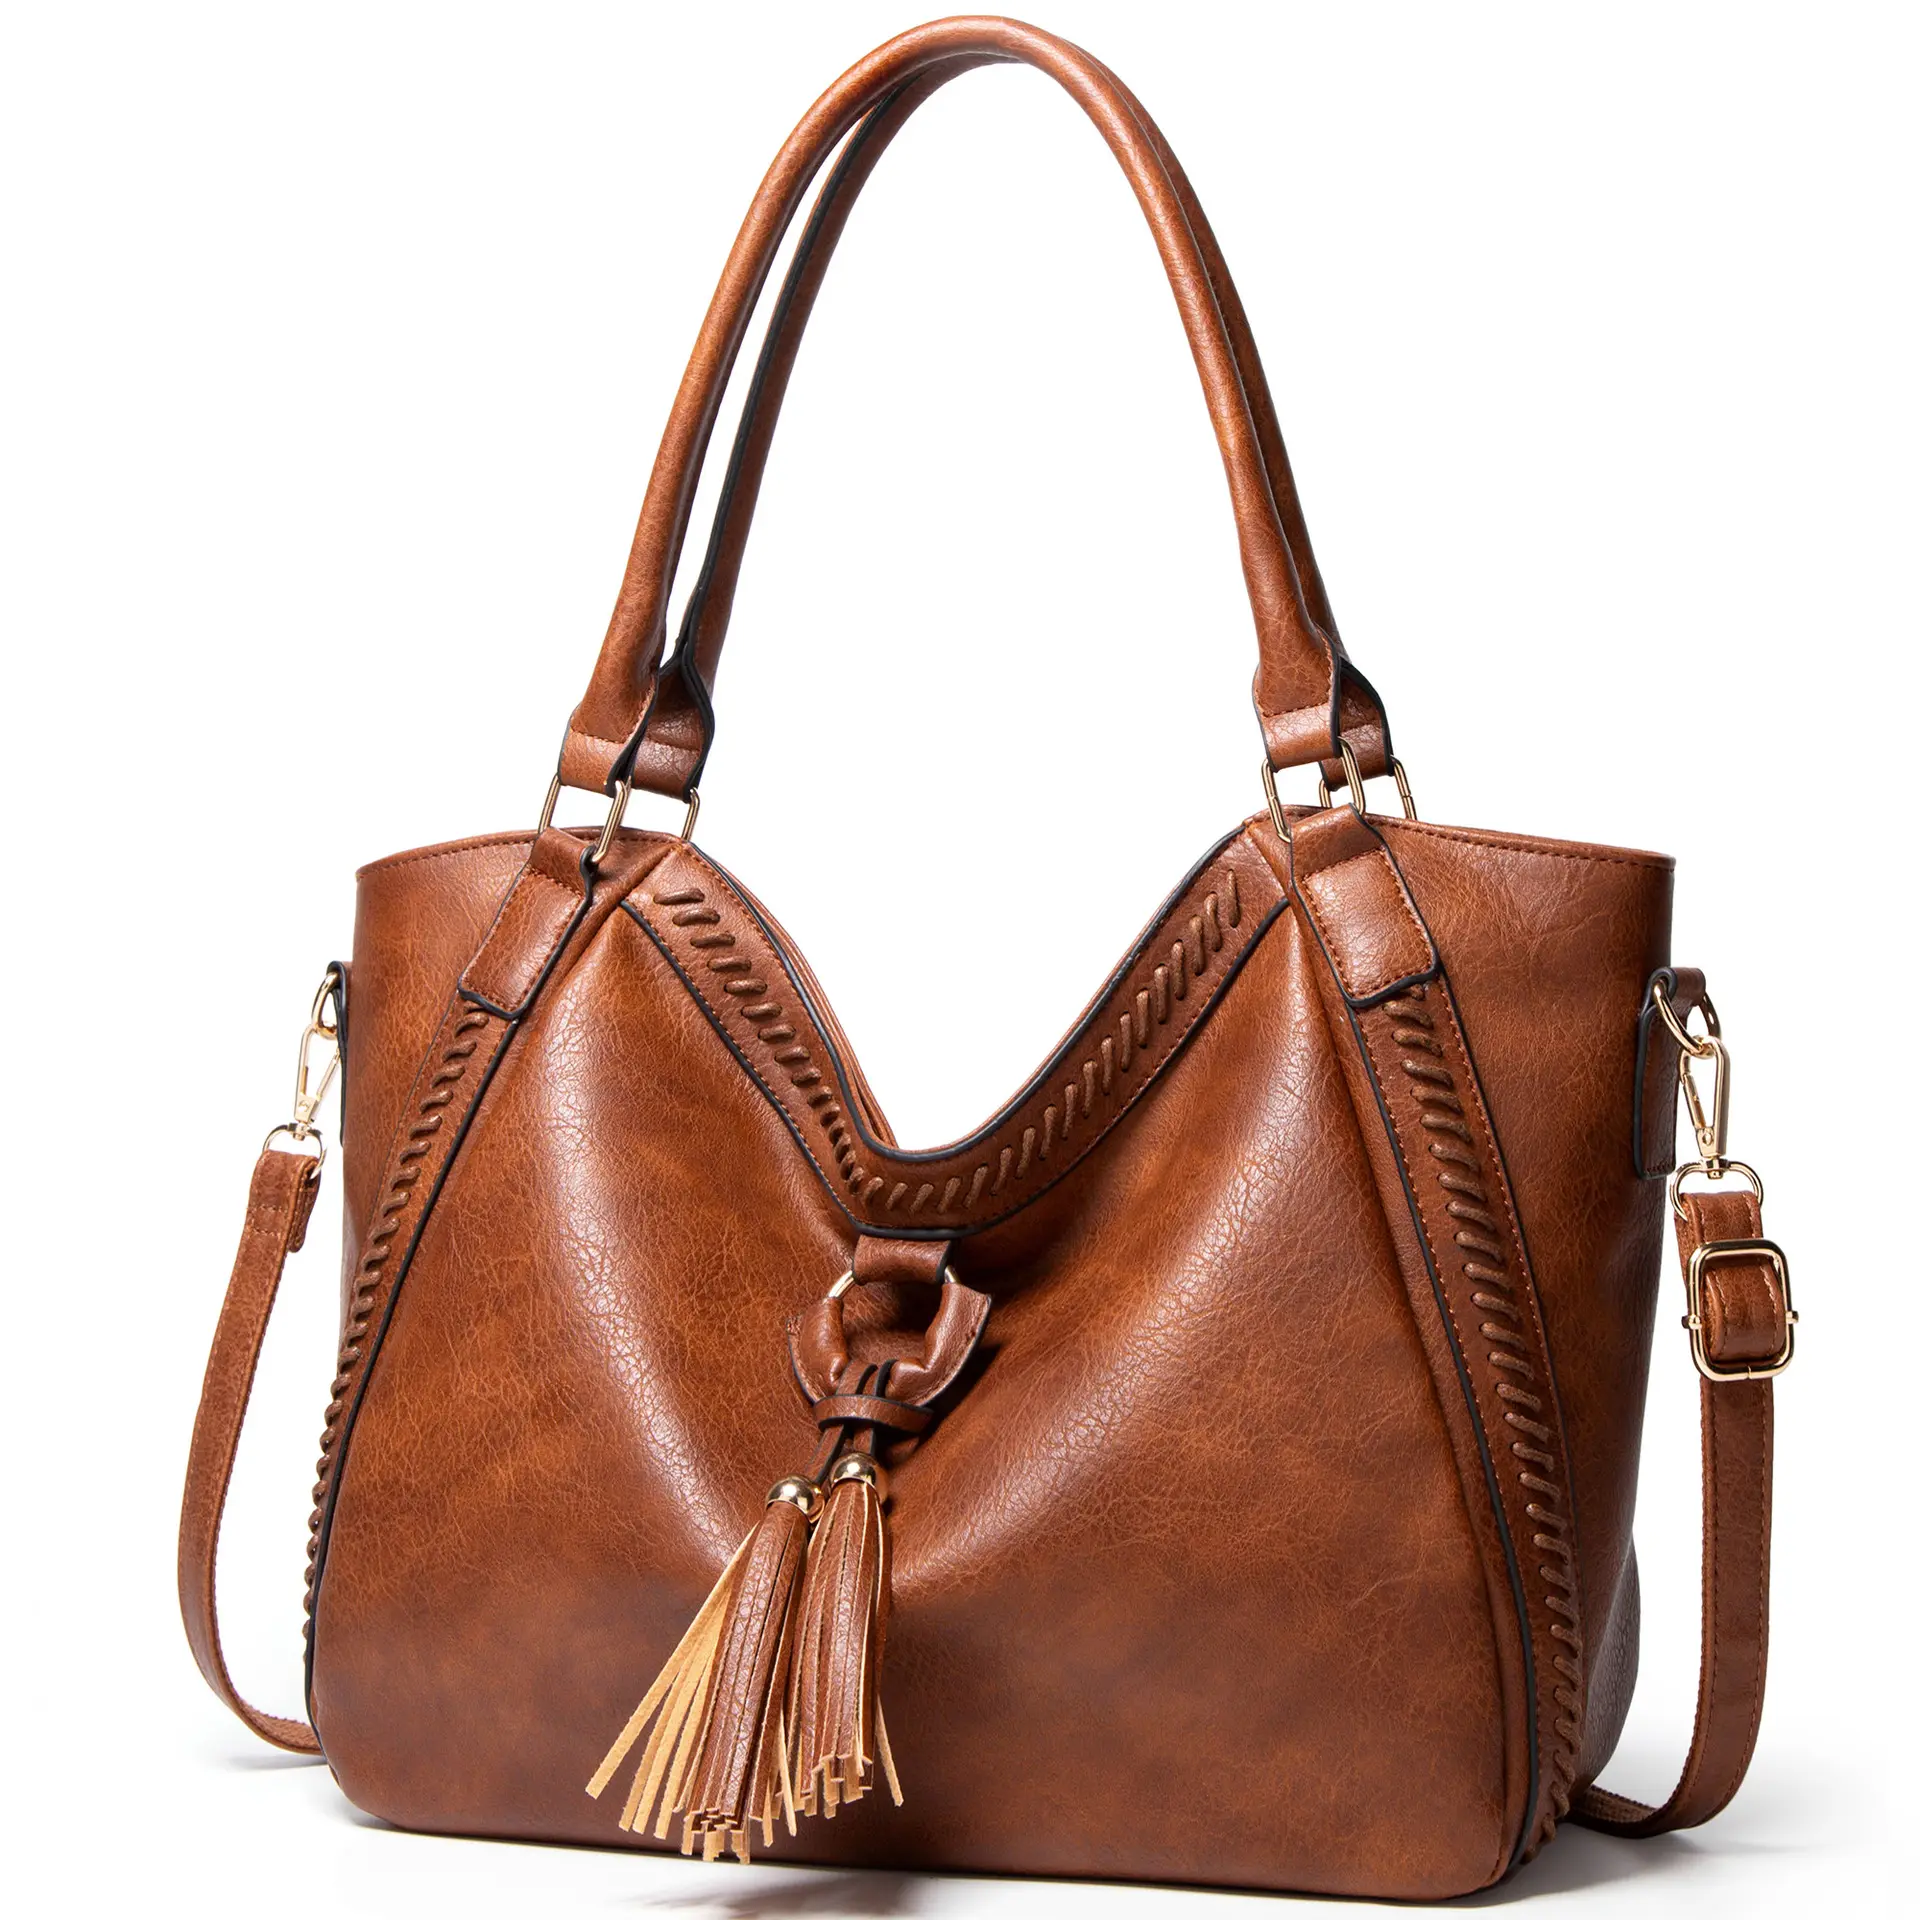 high quality handbags ladies designer leather tote satchel shoulder bag vintage leather tote bag